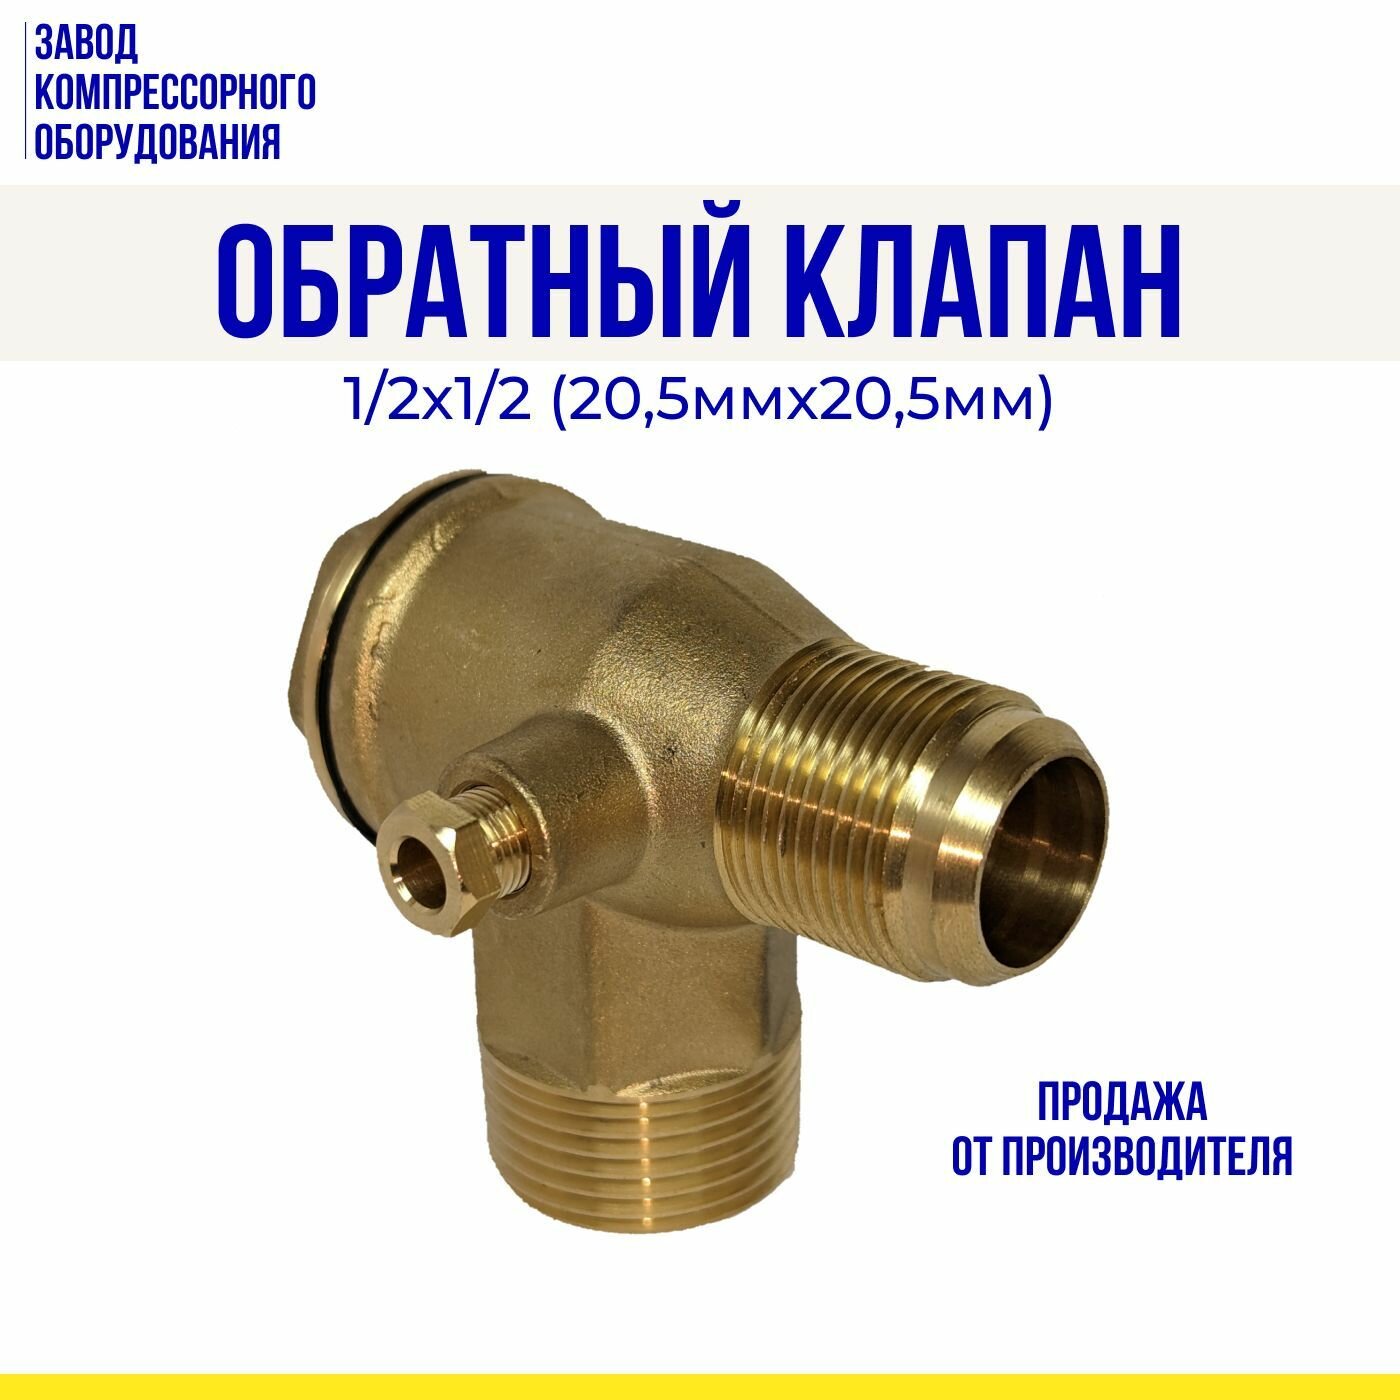 Обратный клапан 1/2х1/2 (205мм*205мм) для компрессоров